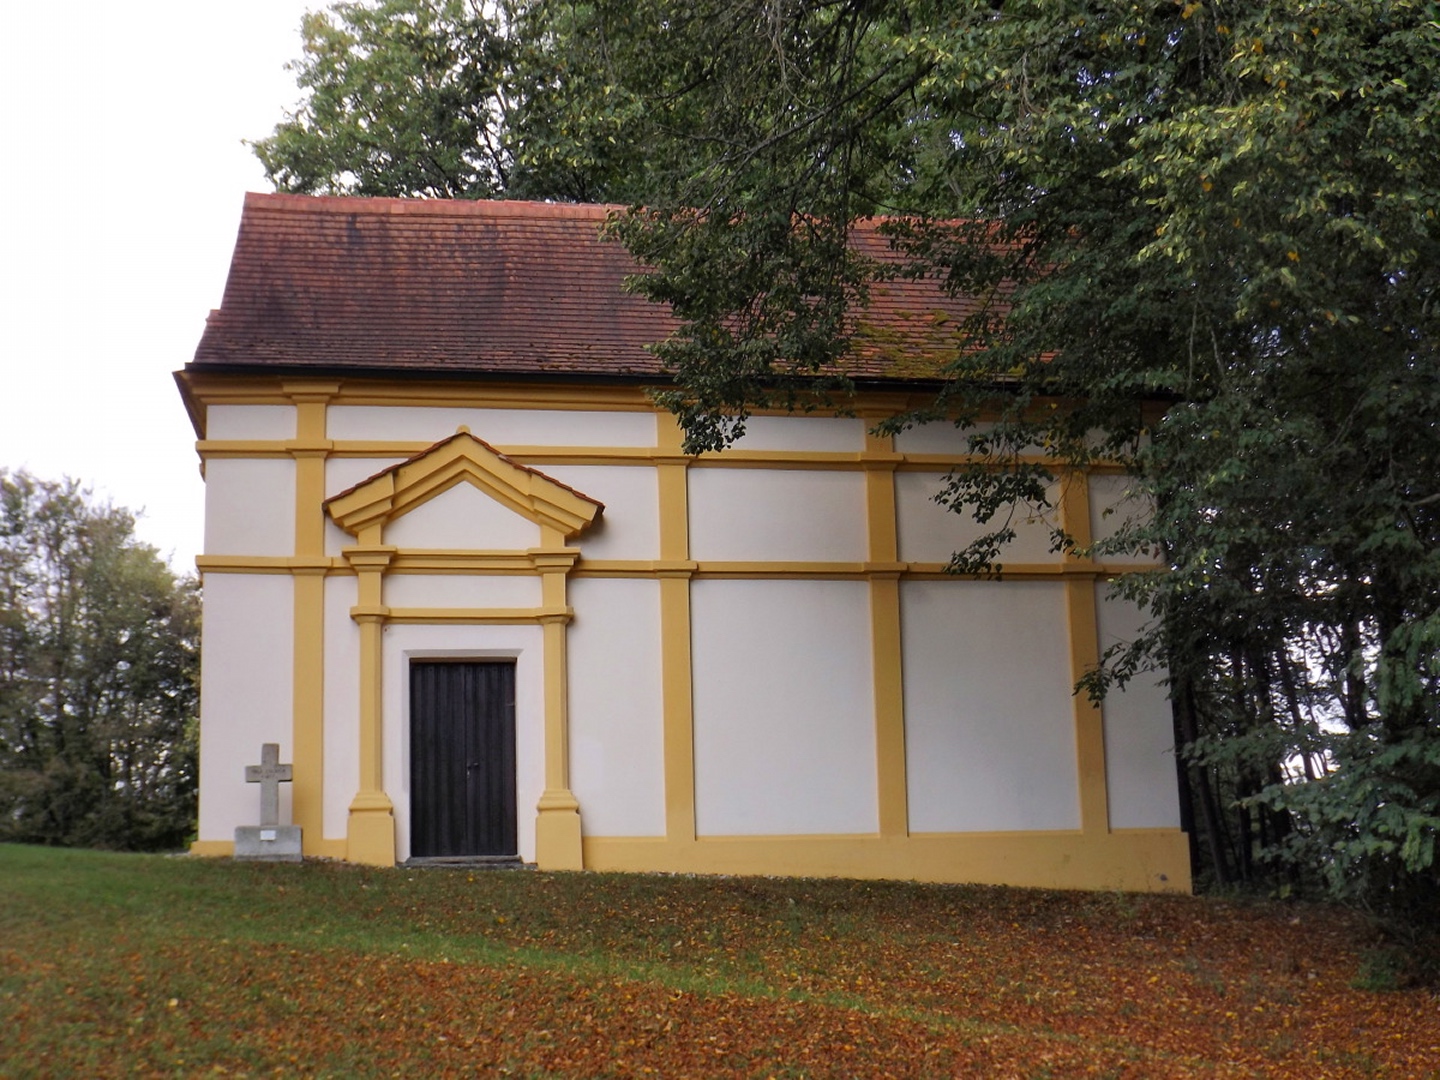 Lorettokapelle